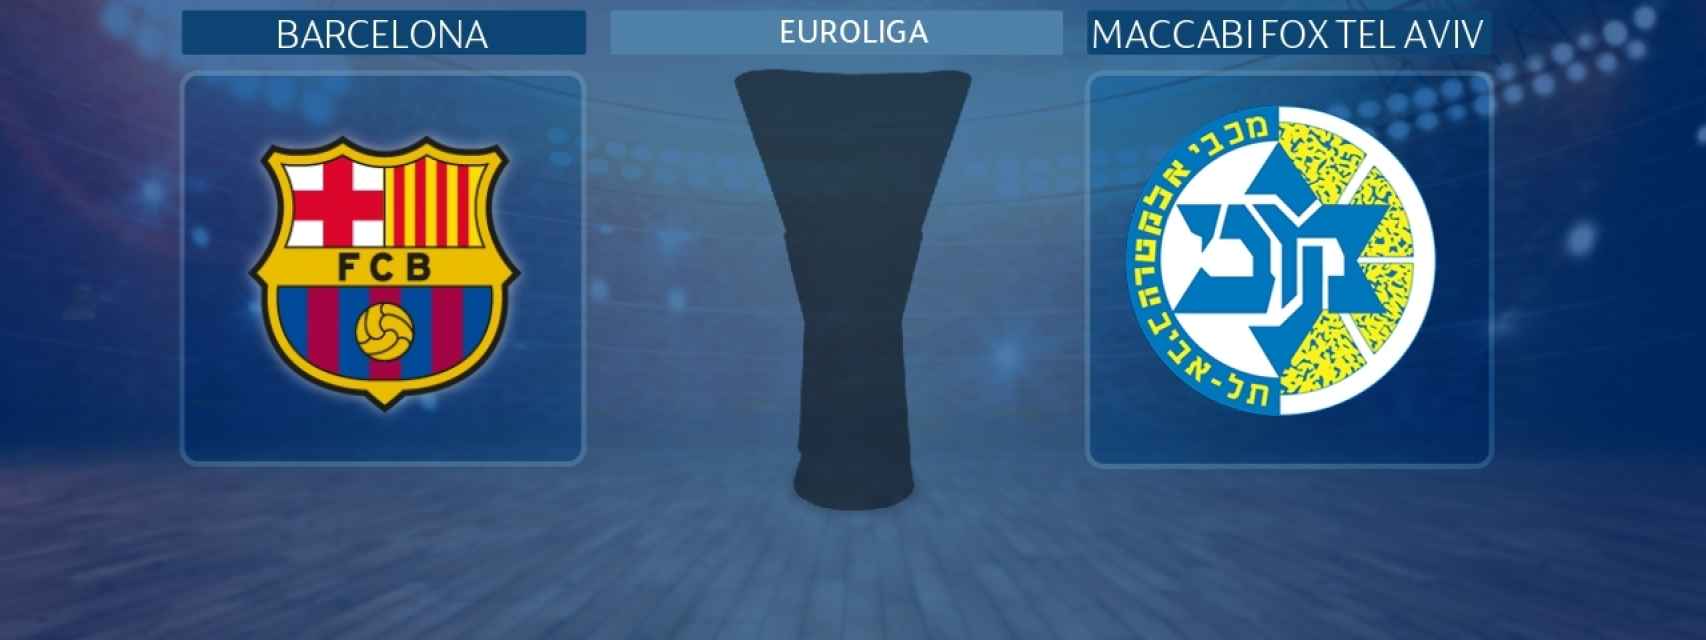 Barcelona - Maccabi Fox Tel Aviv